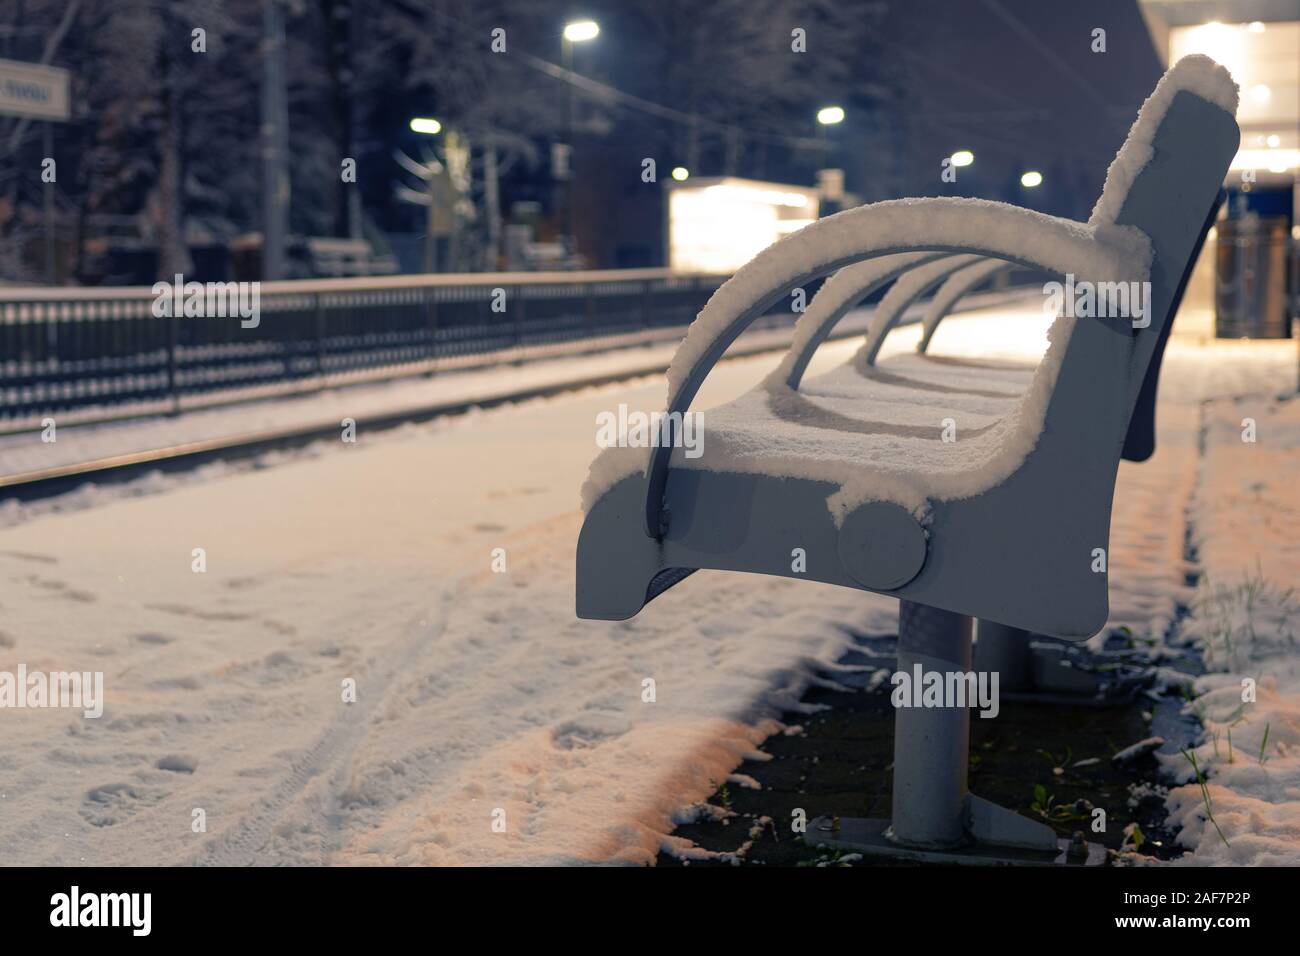 Freie Bank mit Schnee an einem leeren Bahnhof abgedeckt in der Nacht. Erwartung, Einsamkeit und Mobilitätskonzepte Stockfoto